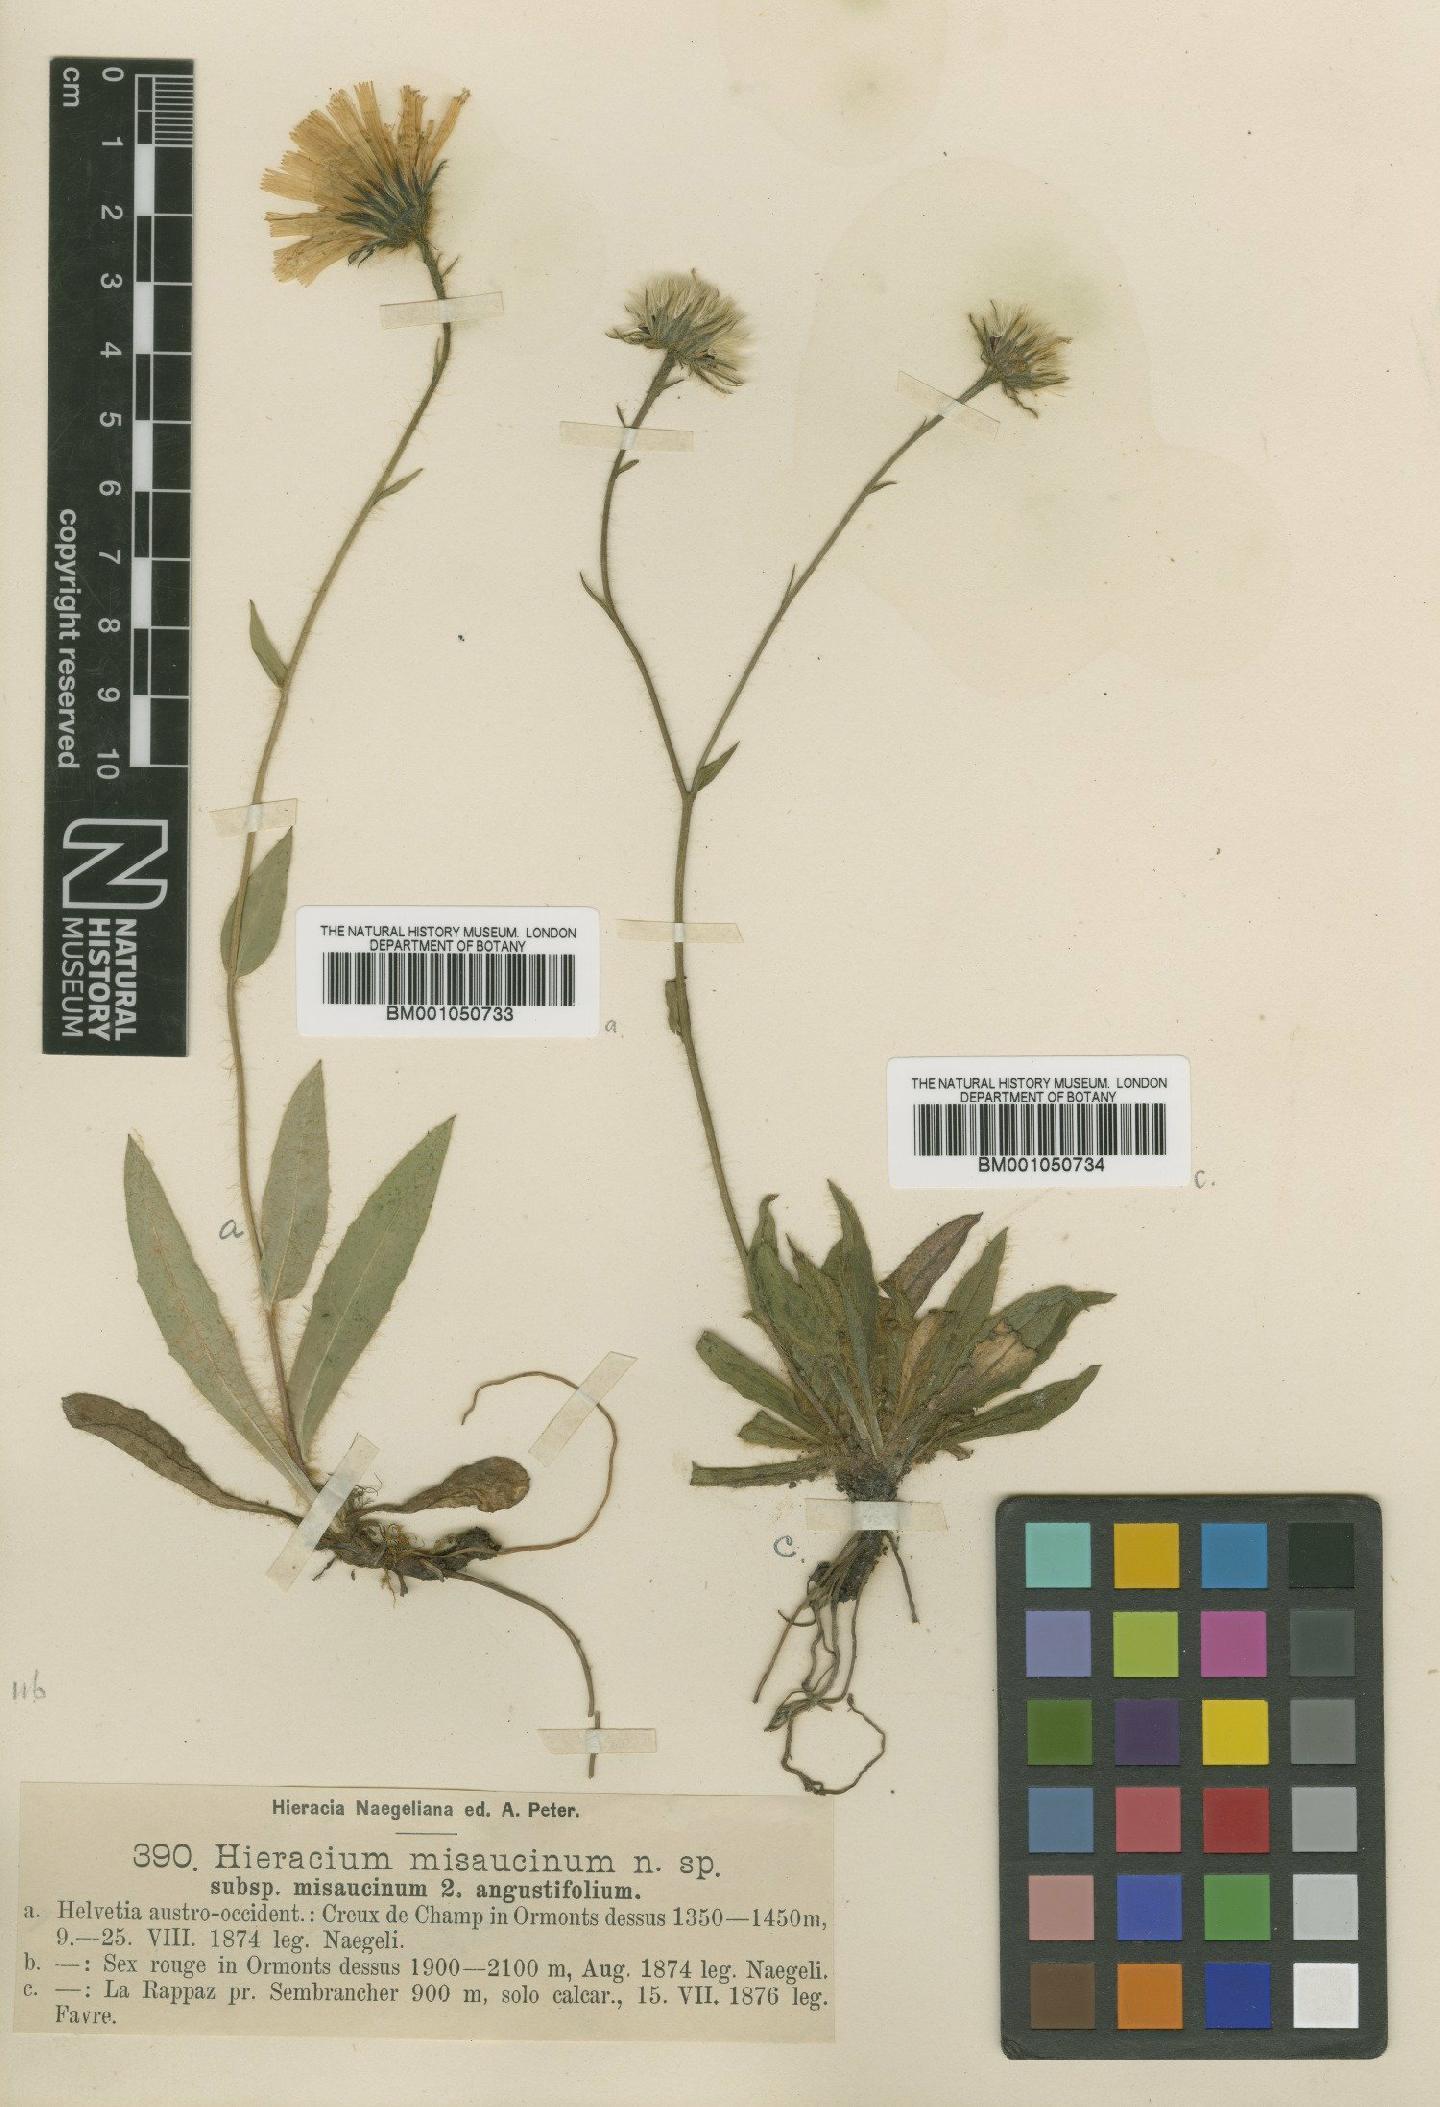 To NHMUK collection (Hieracium misaucinum Nägeli & Peter; TYPE; NHMUK:ecatalogue:2398456)